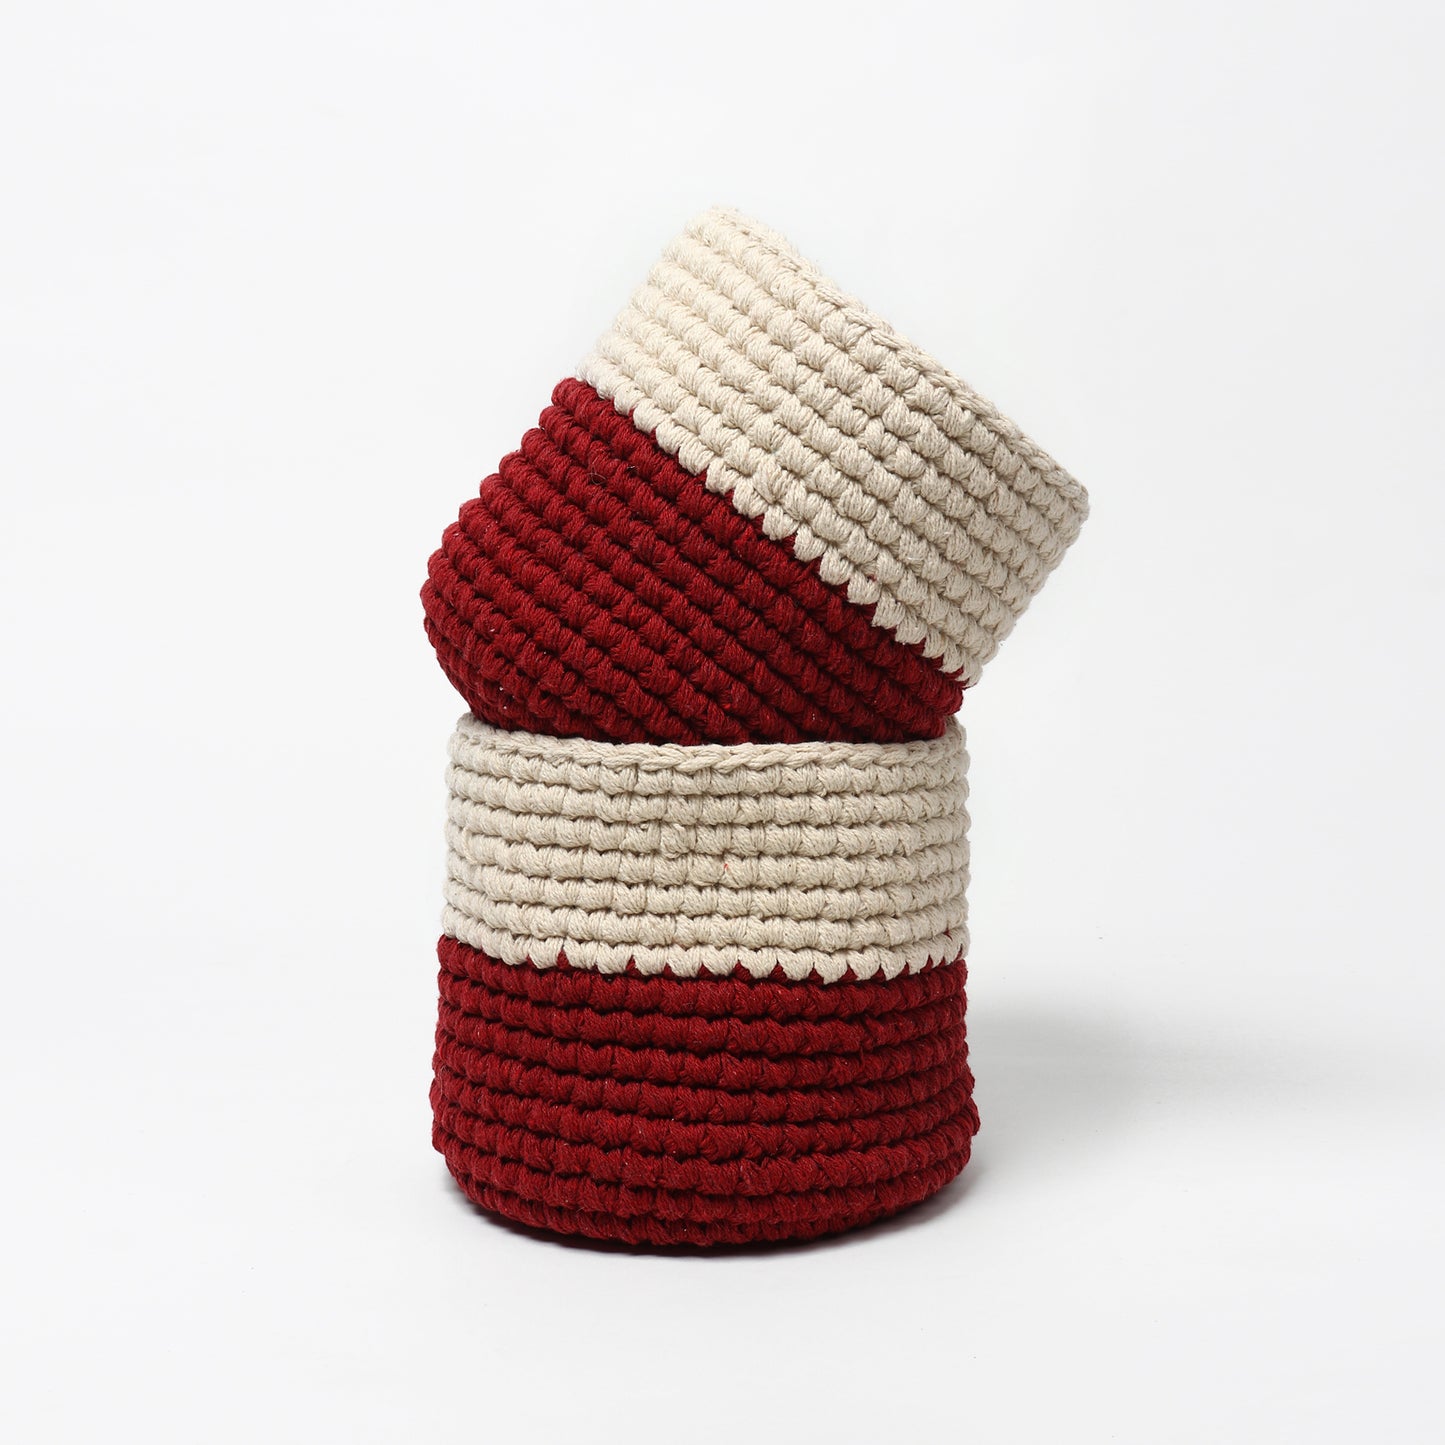 Jute Crochet Storage Basket